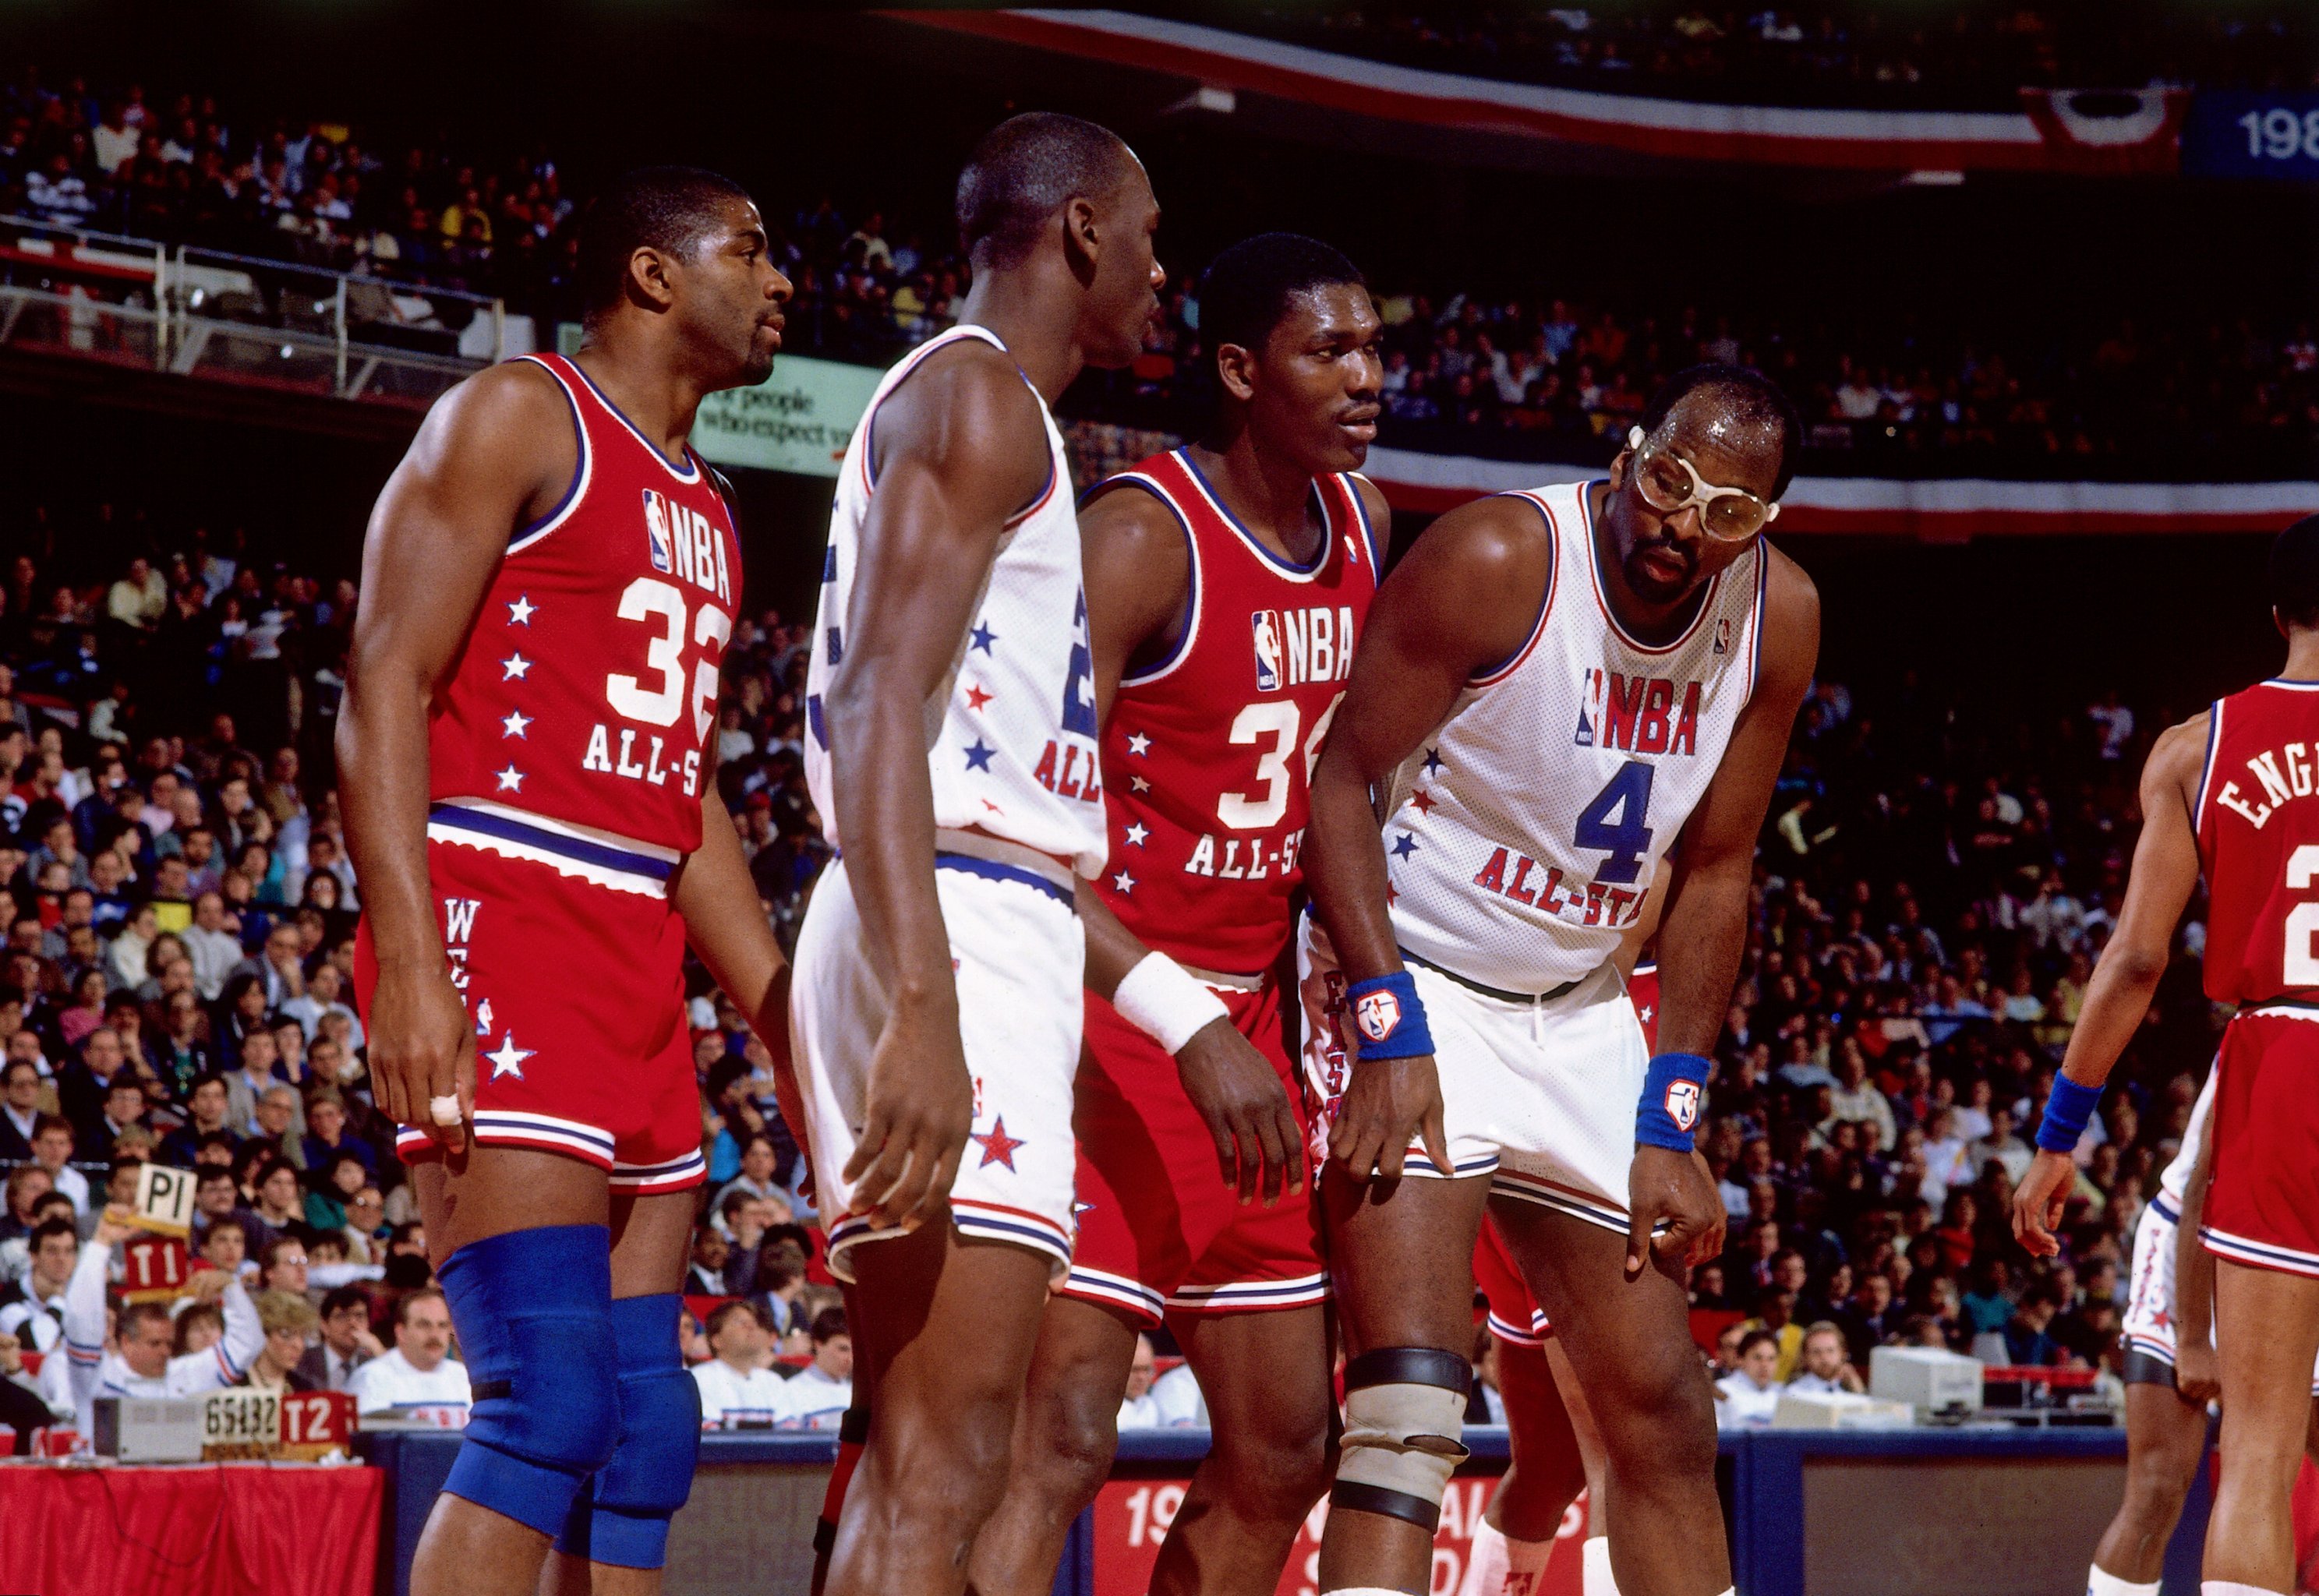 1985 NBA All-Star recap